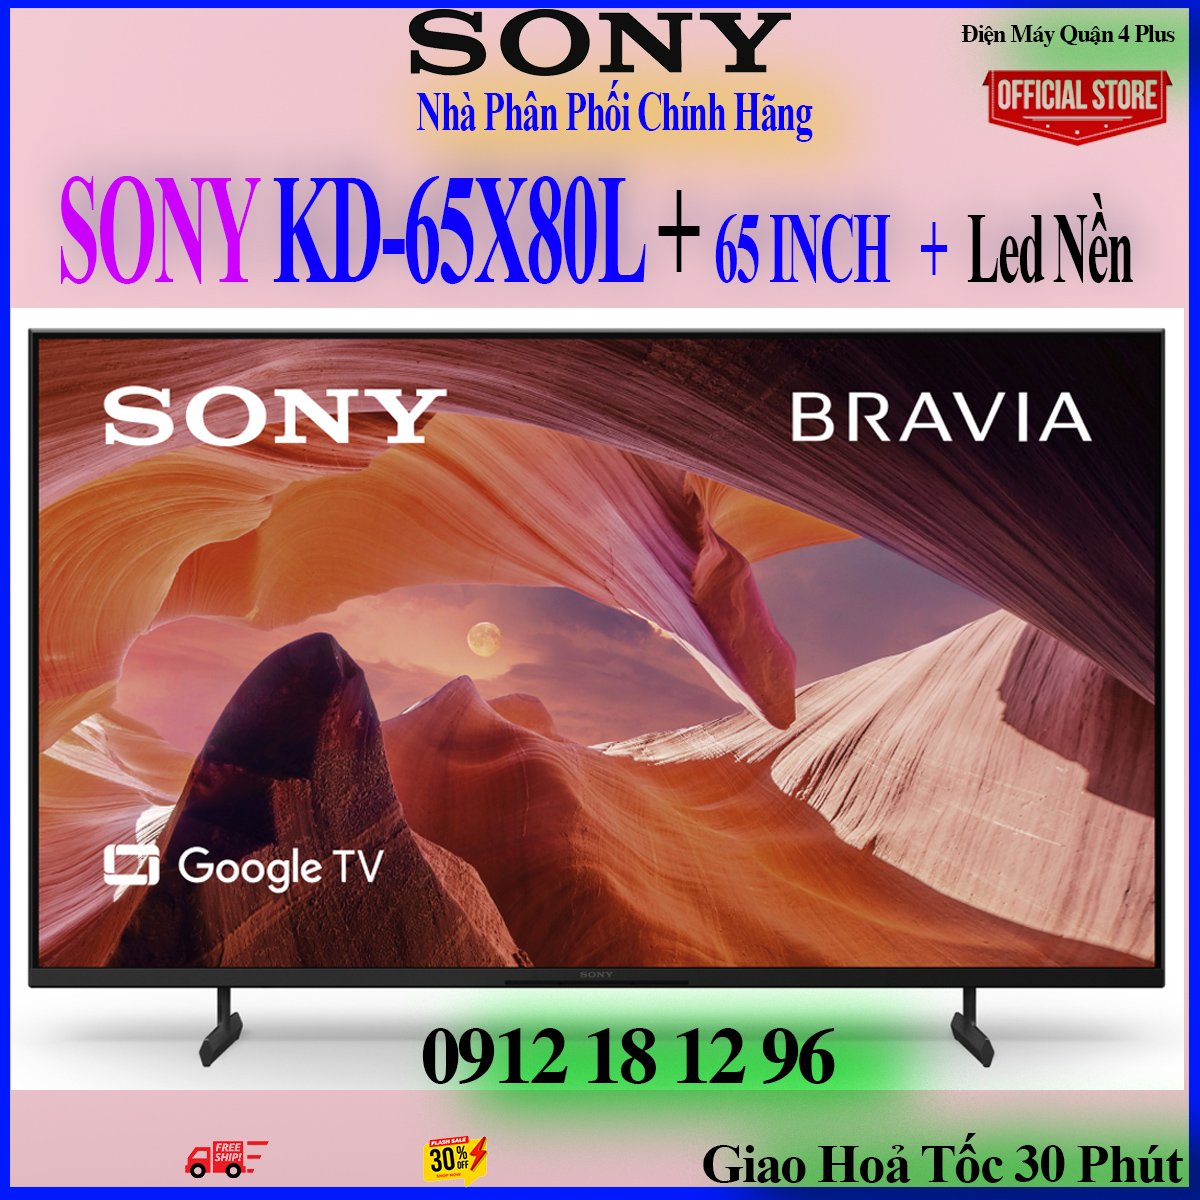 Sony 65X80L - Google Tivi Sony 4K 65 inch KD-65X80L - Hàng chính hãng - 4k sắc nét - tìm kiếm giọng nói - Led nền 4k